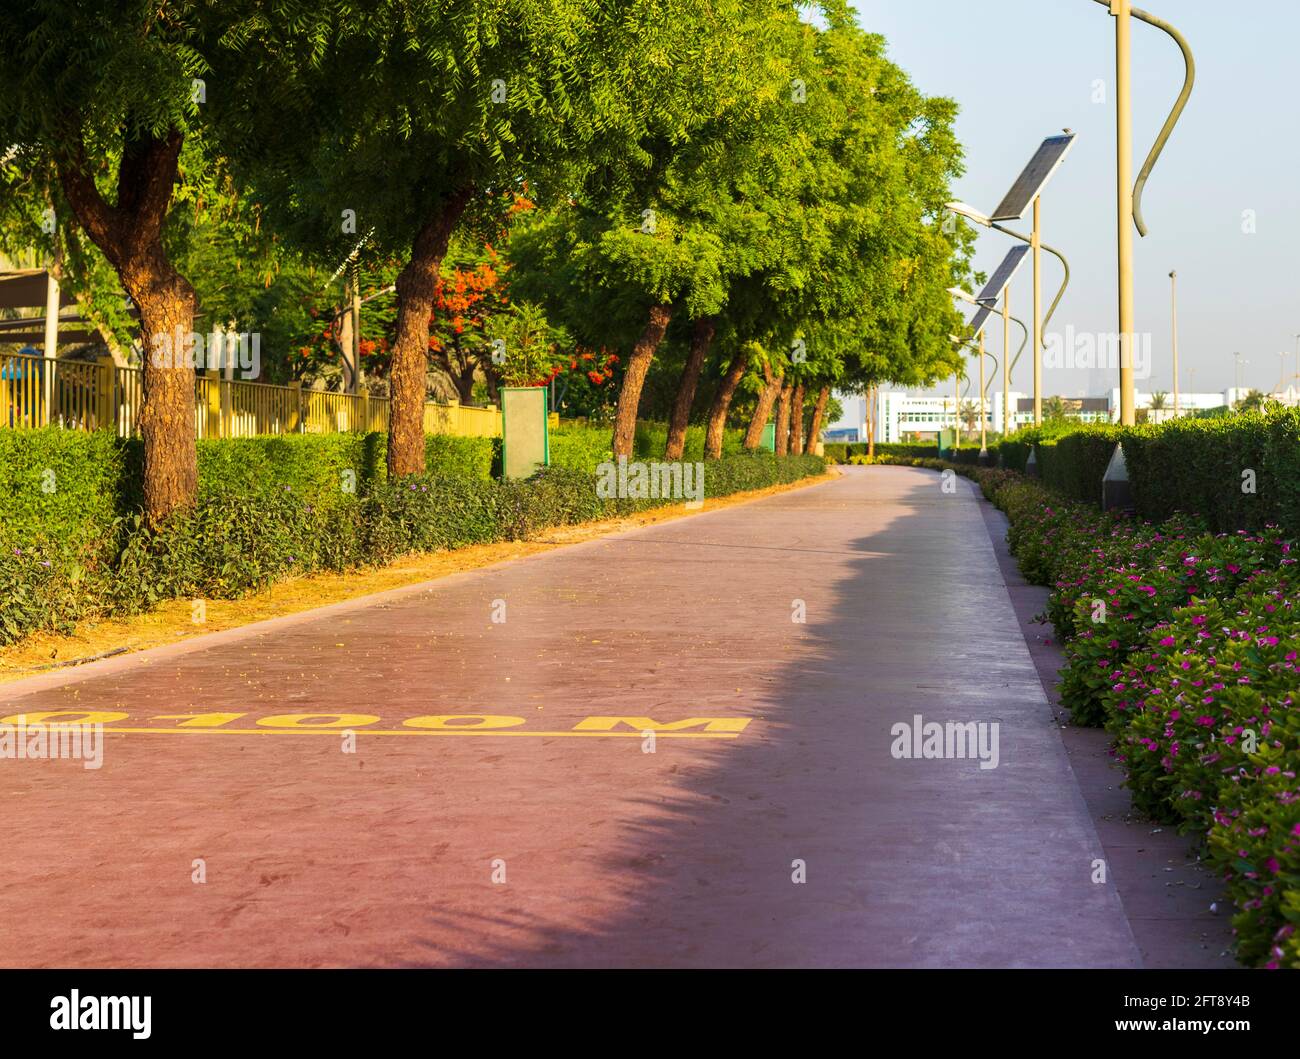 Dubai, Émirats Arabes Unis - 05.21.2021 - piste de jogging dans le parc nad Al Hamar, tôt le matin. Le poteau de lampe alimenté par des panneaux solaires peut être vu dans l'image Banque D'Images